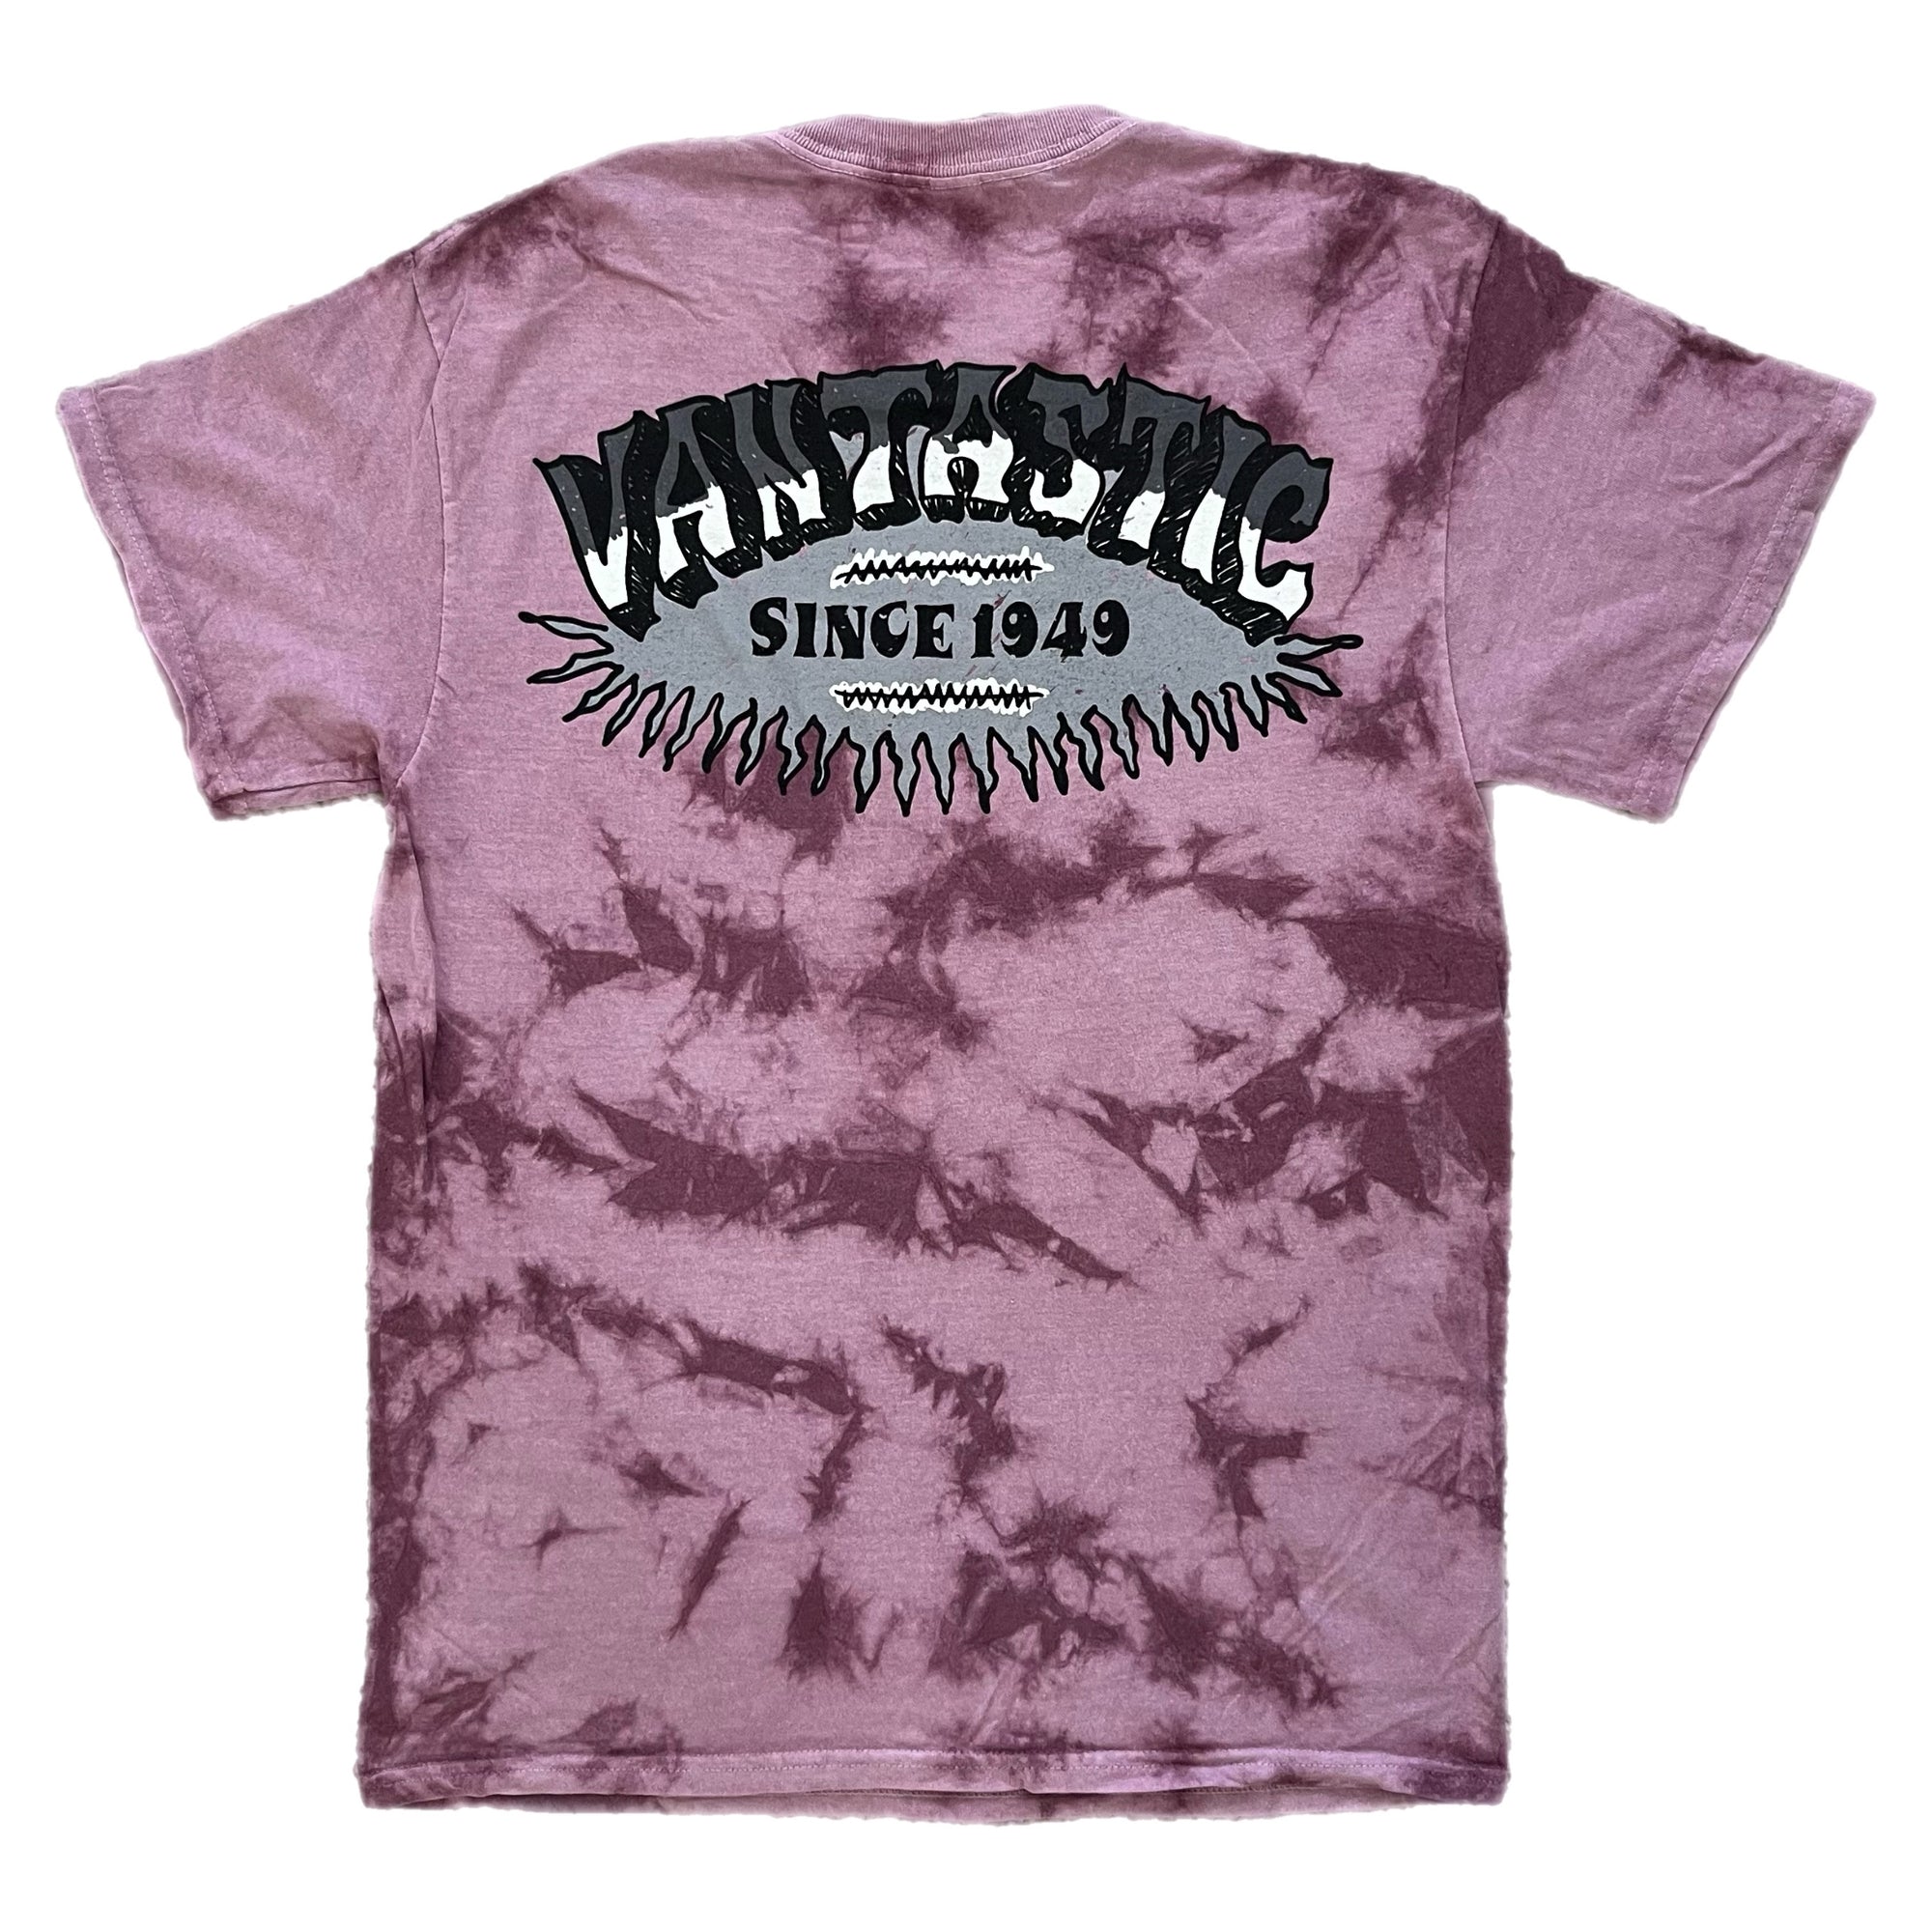 Tie-dye surf t-shirt - Dusty Pink Scrunch